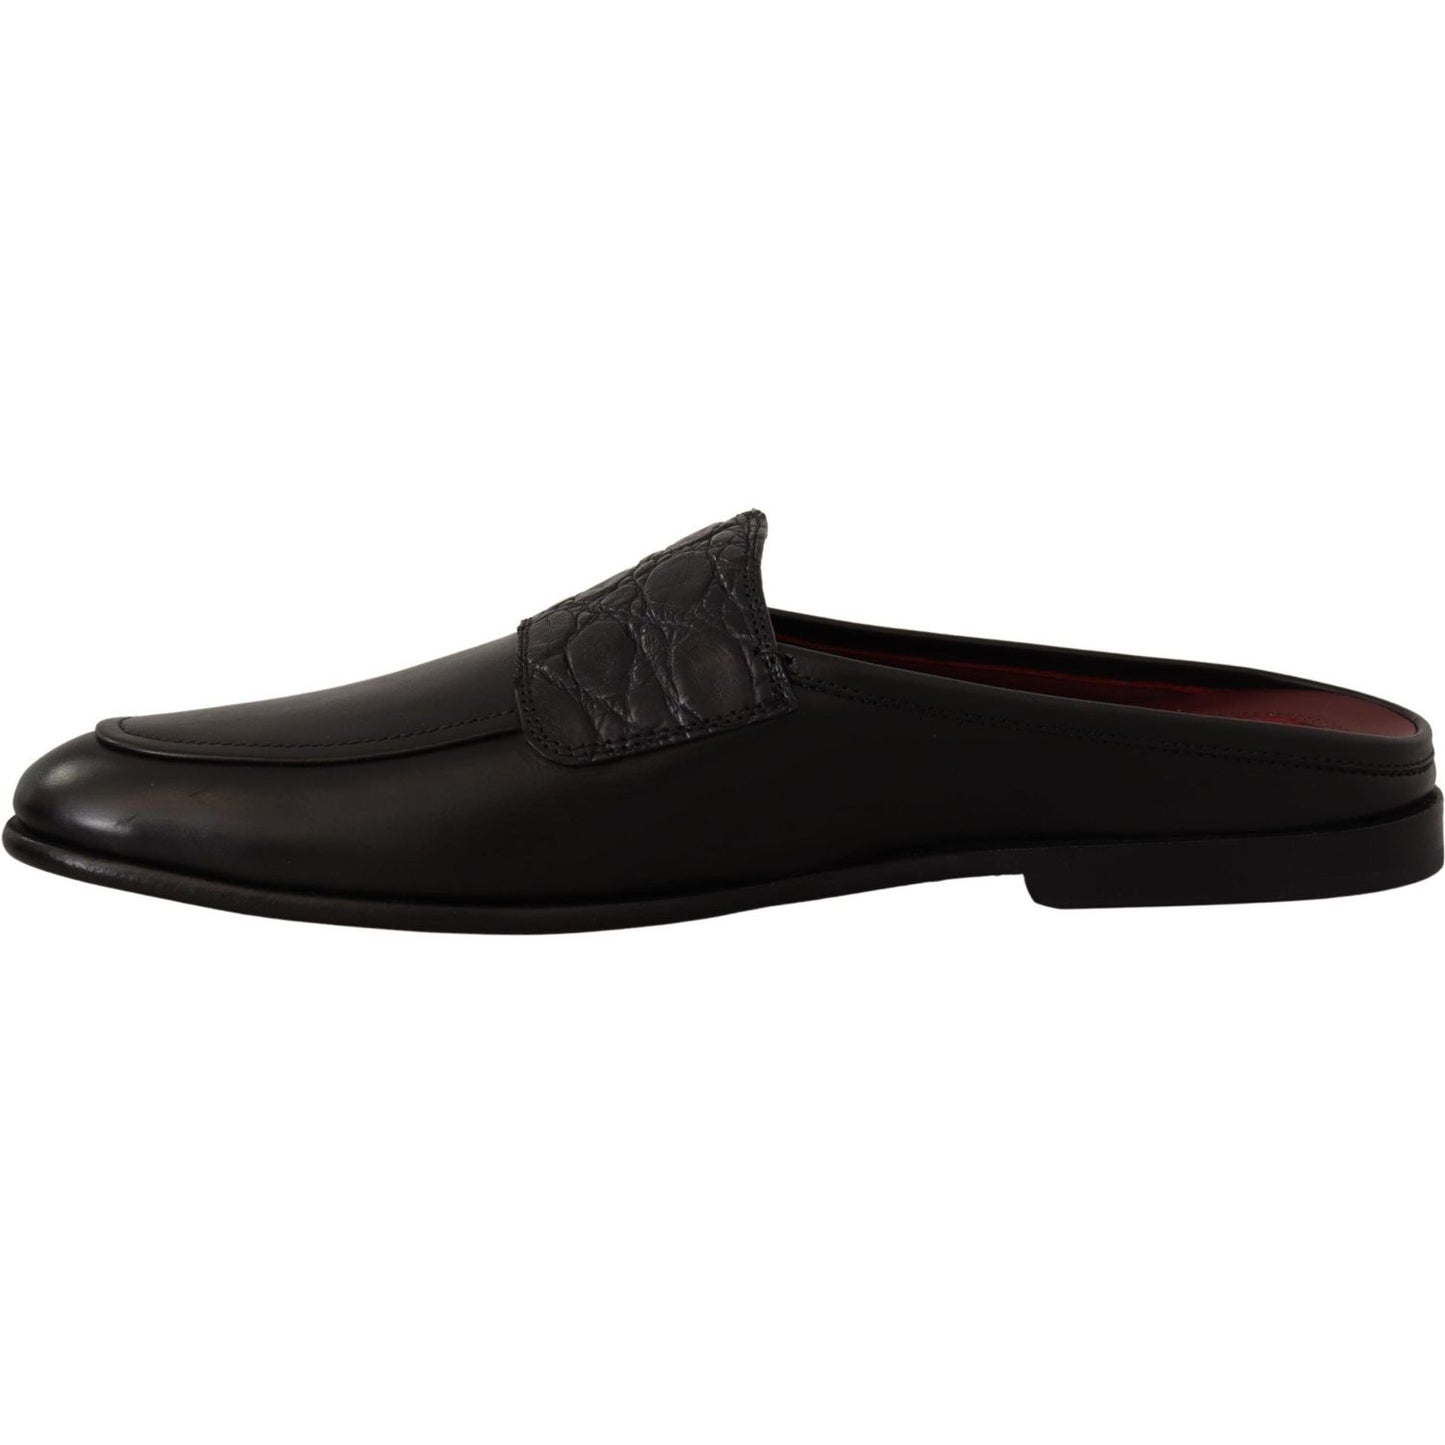 Dolce & Gabbana Exquisite Black & Burgundy Leather Slides black-leather-caiman-sandals-slides-slip-shoes IMG_1671-scaled-aaaf6b87-5ed.jpg